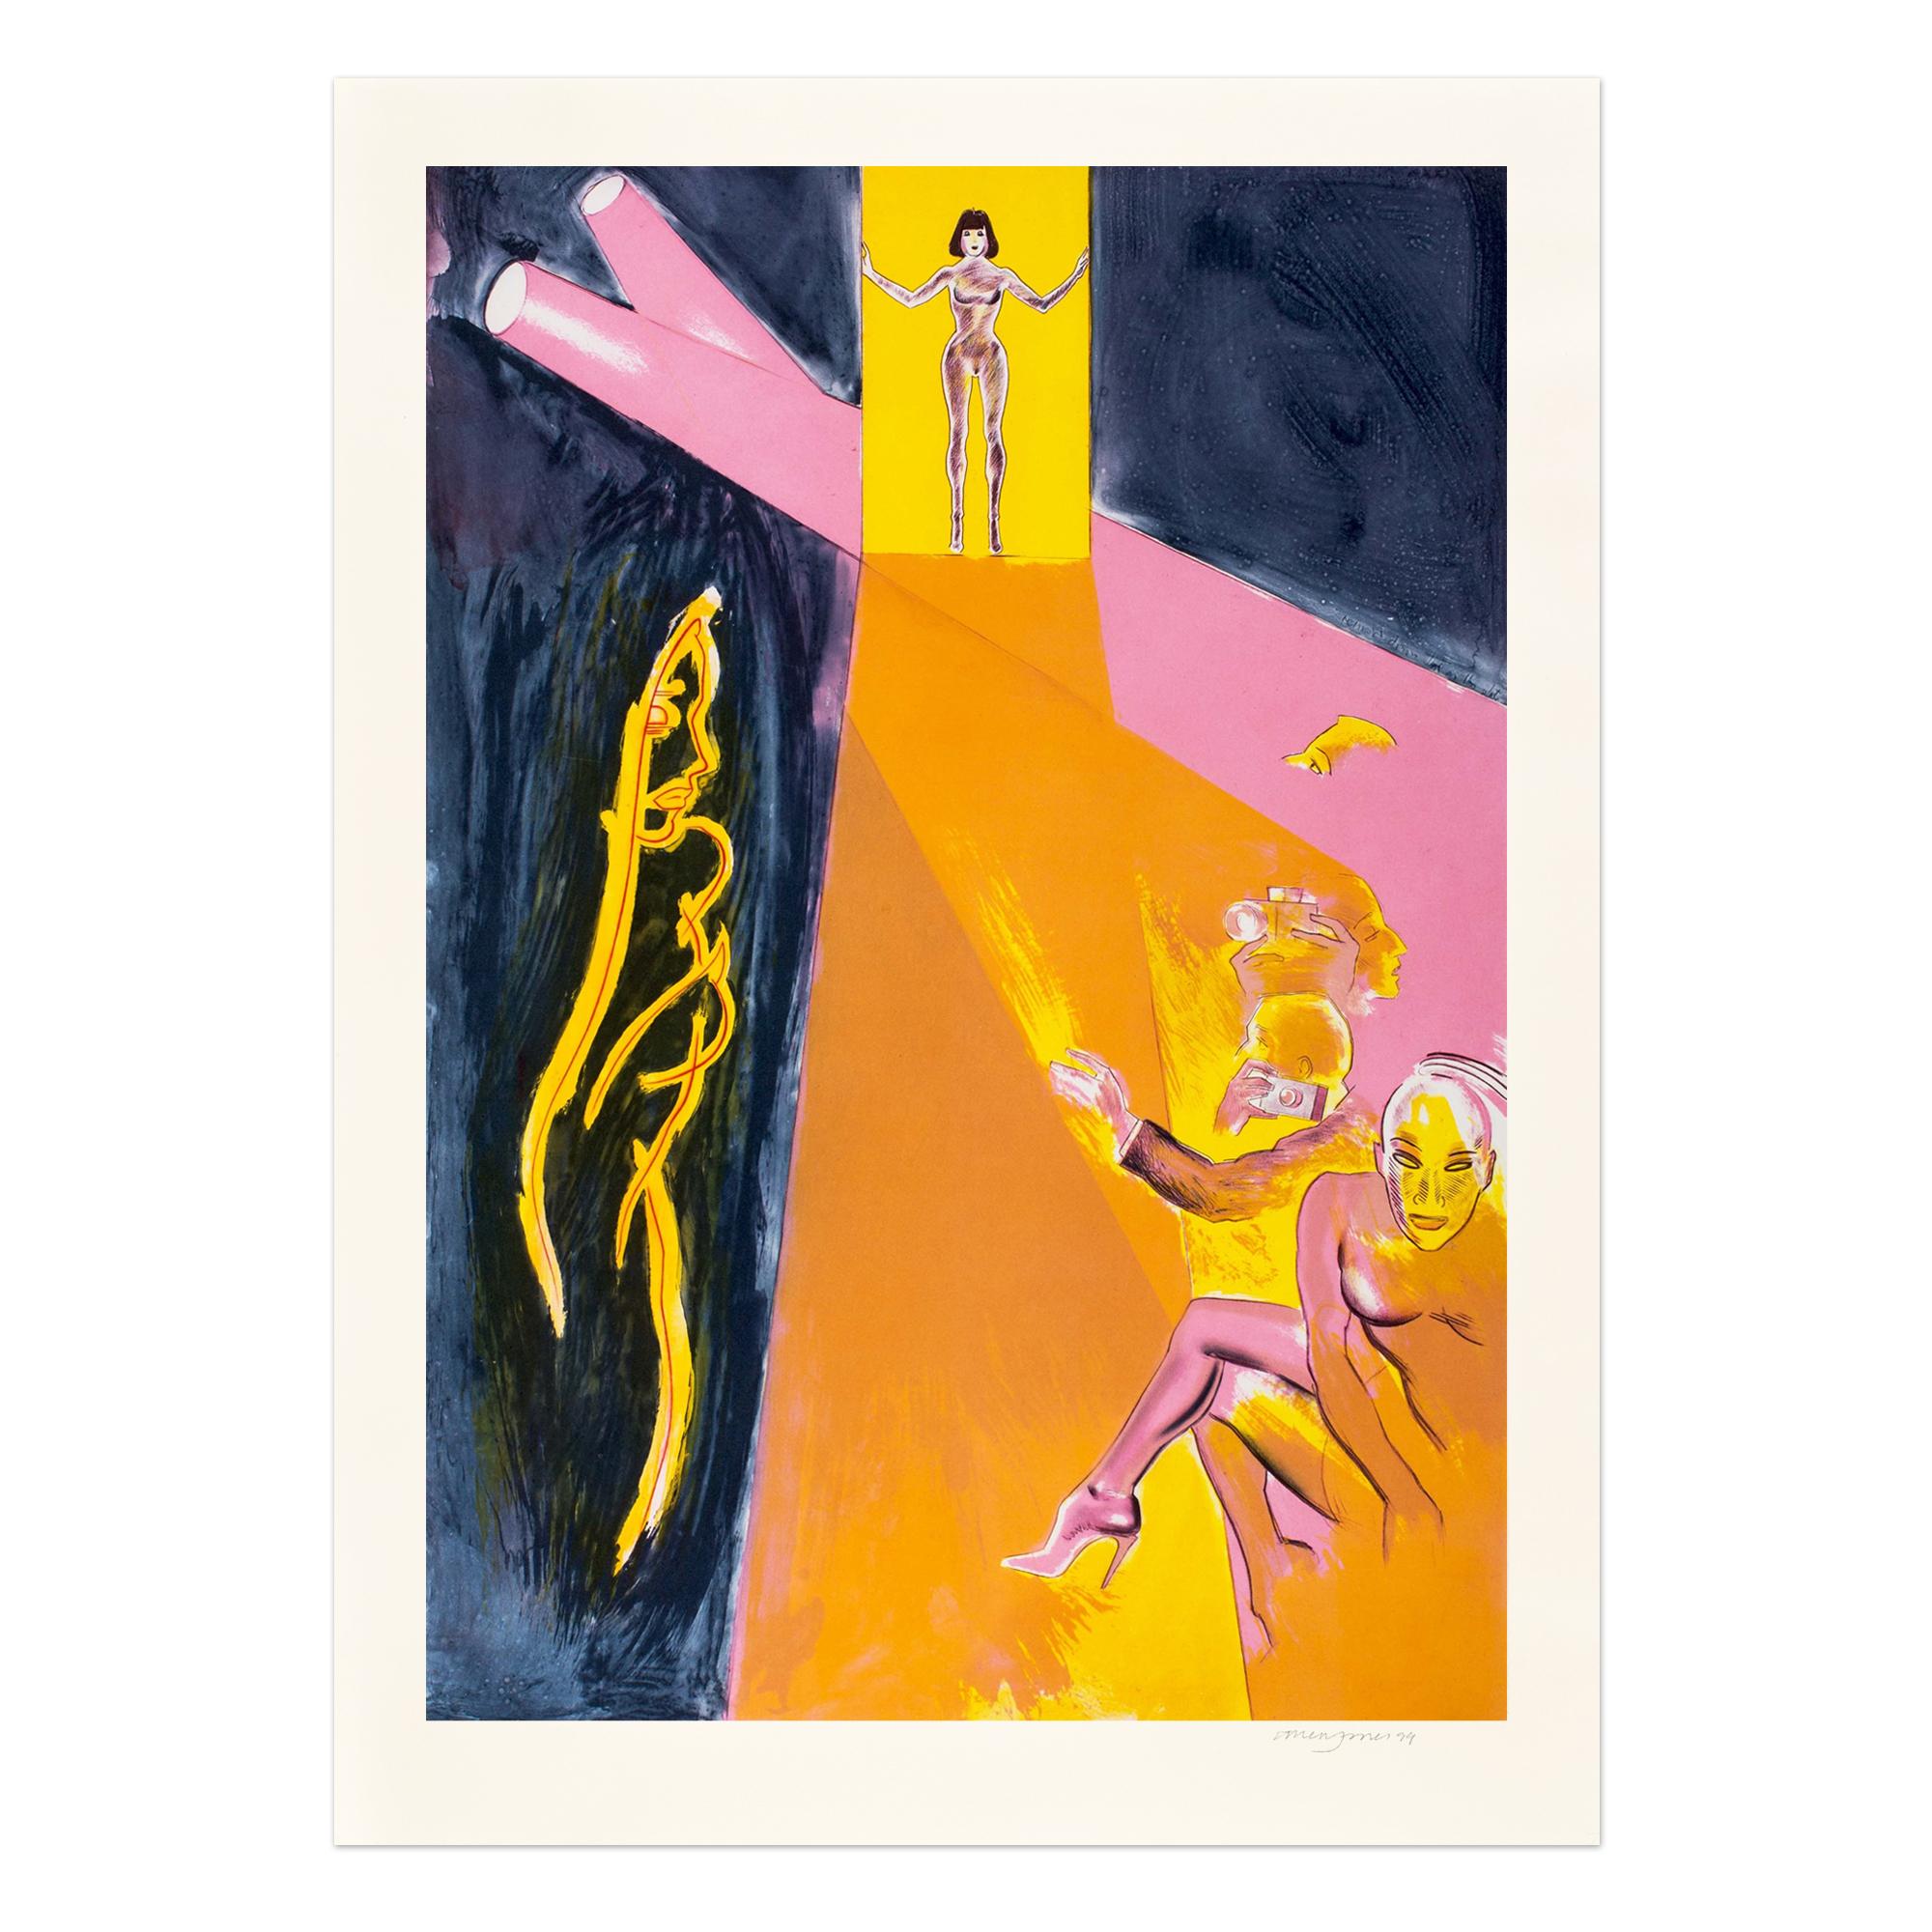 Allen Jones Print - Catwalk II, Etching in Colors, Pop Art, British Art, 20th Century